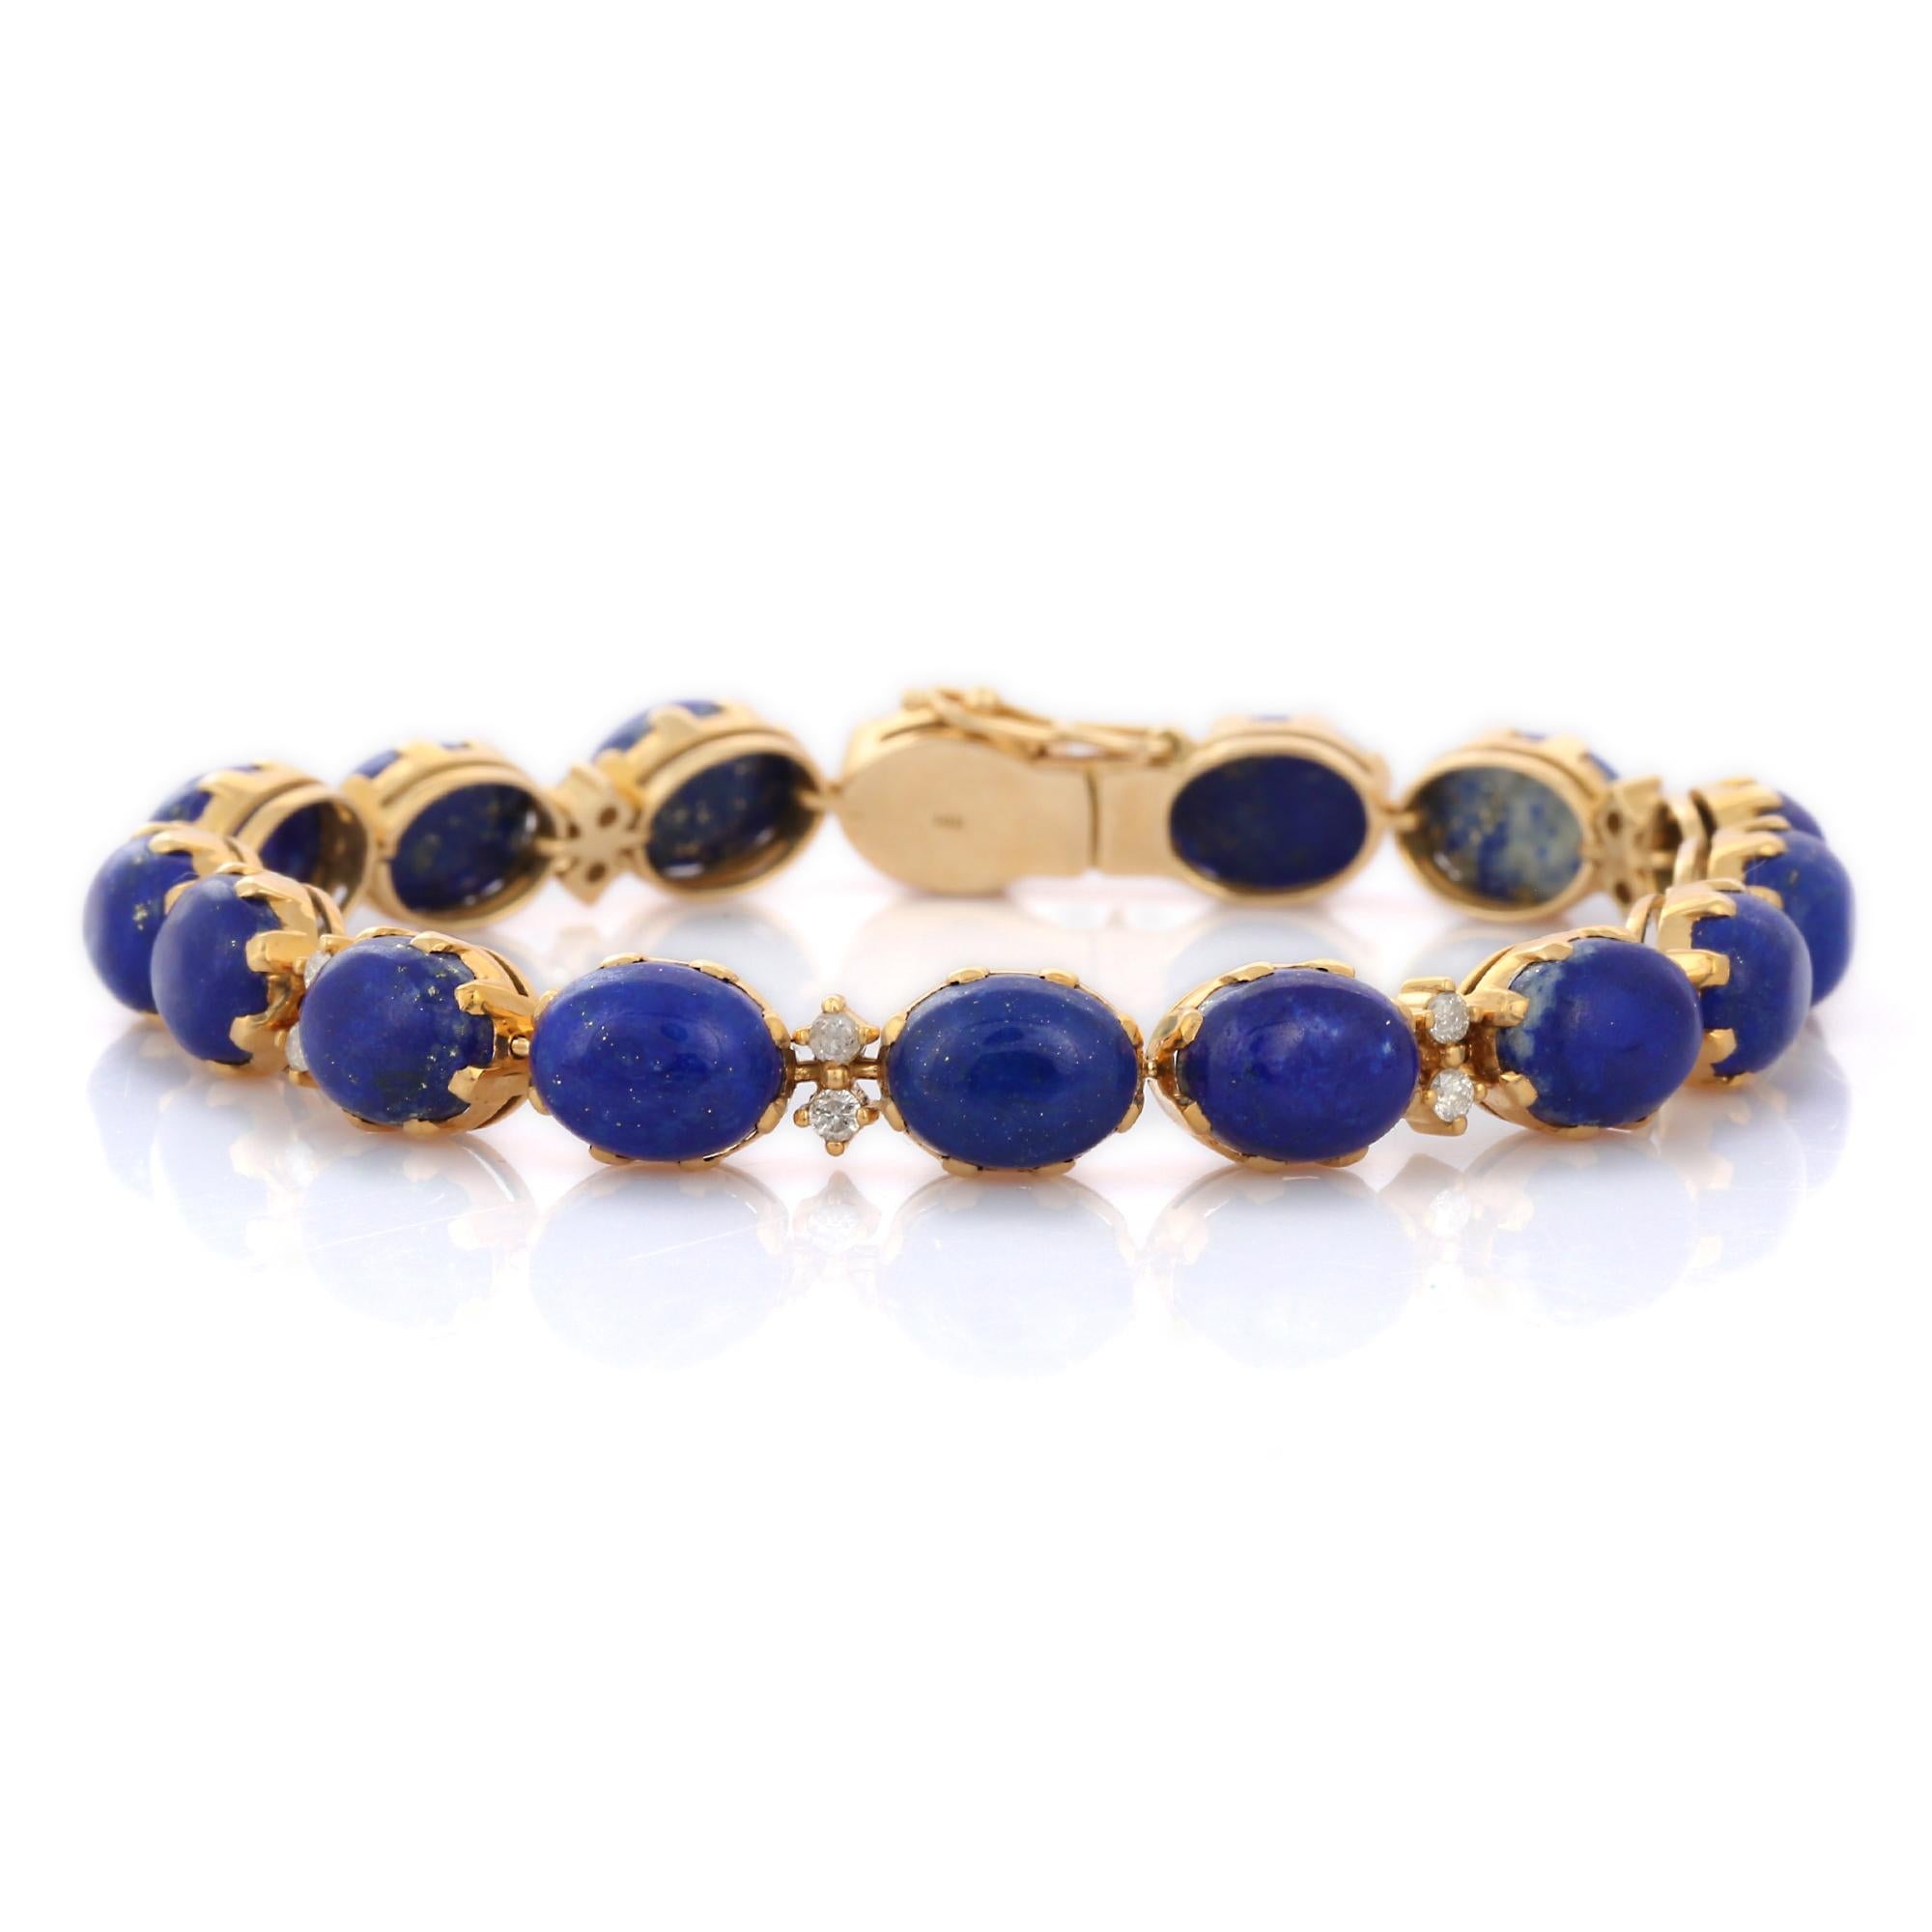 Bracelet en Lapis Lazuli en or 14K. Il est doté d'une pierre précieuse de taille ovale parfaite et de diamants qui vous permettront de vous démarquer en toute occasion ou lors d'un événement. Des bracelets sont portés pour rehausser le look. Les